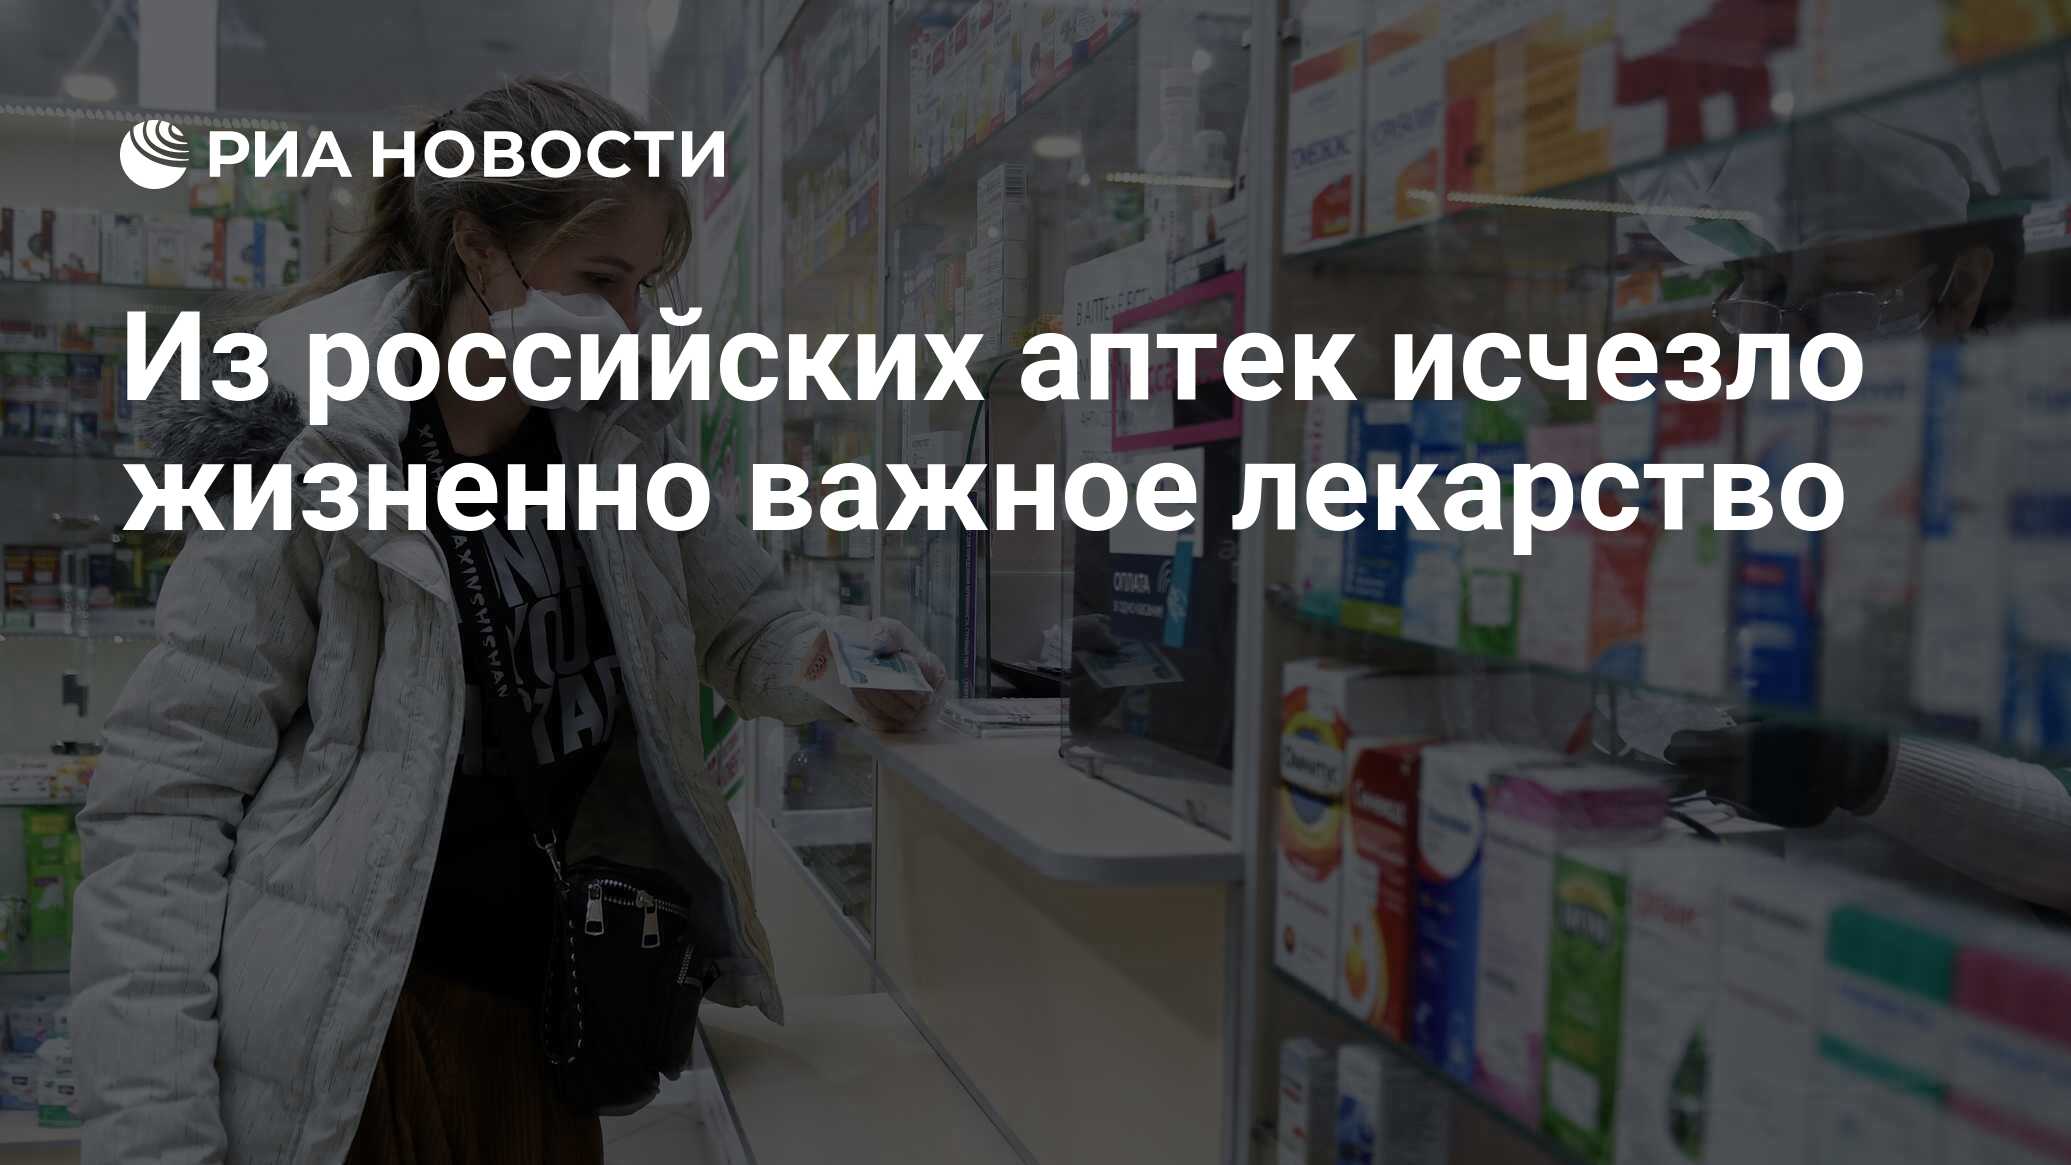 Из российских аптек исчезло жизненно важное лекарство - РИА Новости, 30 .